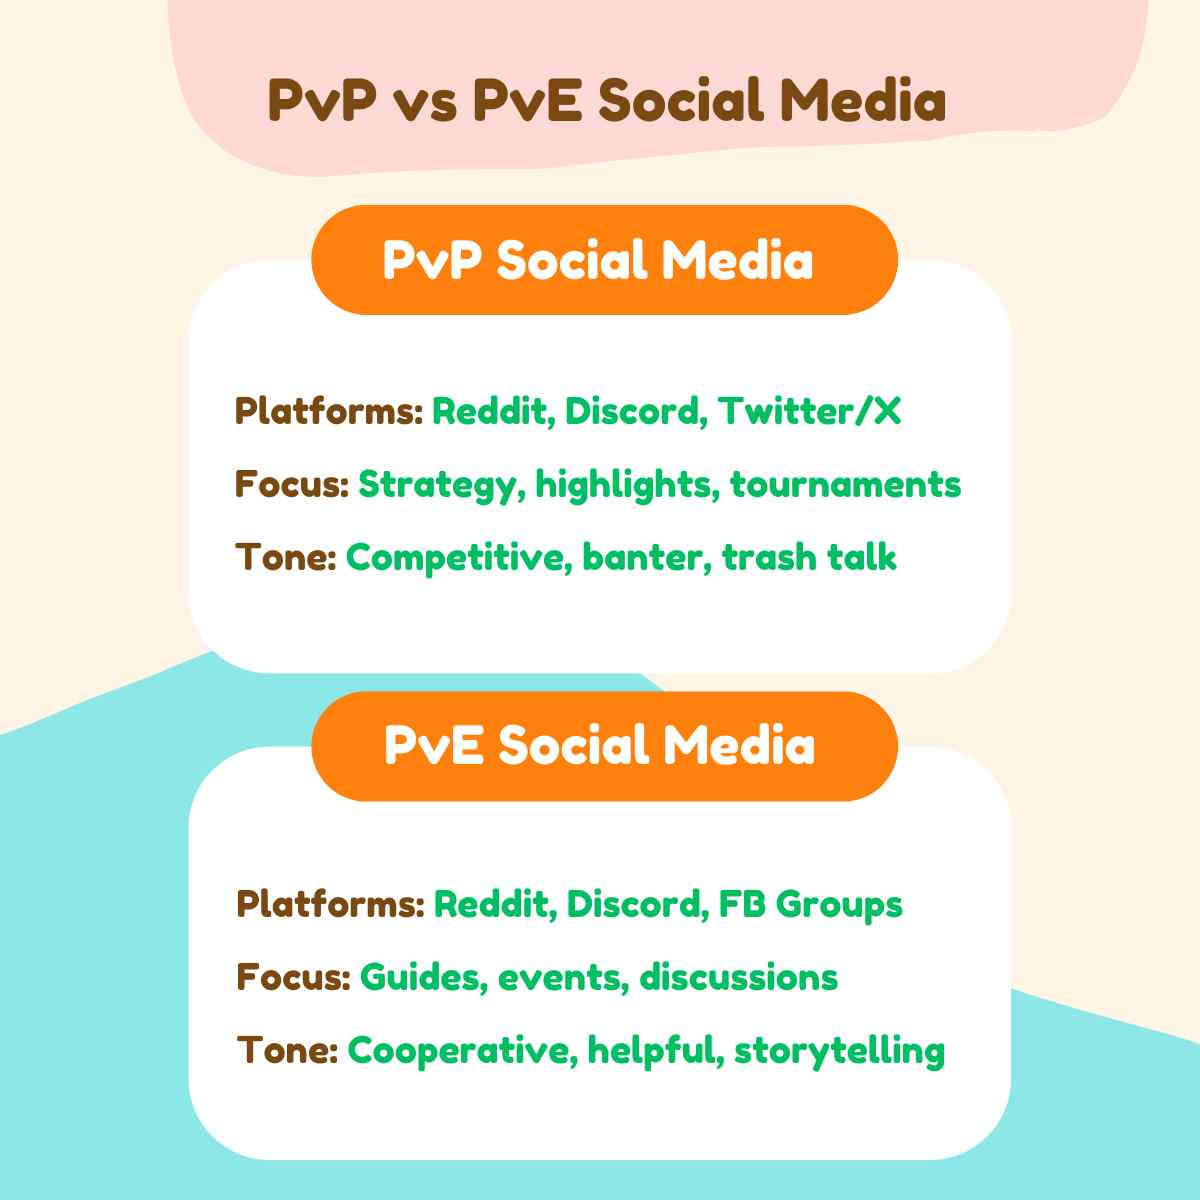 PvP vs PvE Social Media